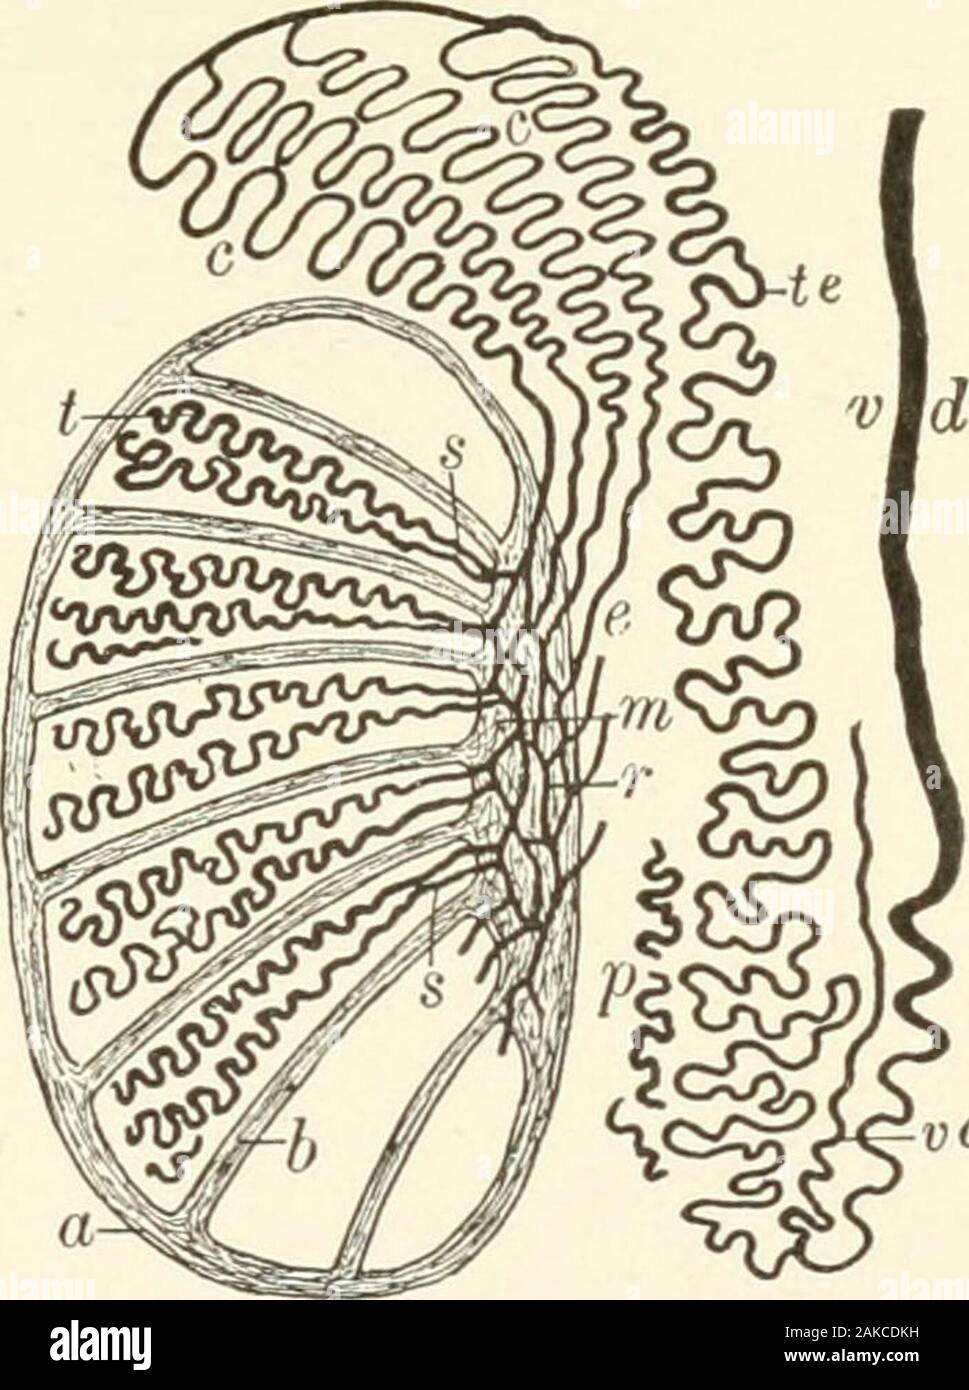 Lehrbuch der normalen Histologie: einschließlich der Berücksichtigung der Entwicklung der Gewebe und der Organe. stinum stoutfibrous Septen Strahlen auf die Pe-riphery, also die Aufteilung des organinto eine Reihe von unregelmässigen pyram - Idal Fächer oder Läppchen, in der die Tubuli seminiferi tubulesare enthalten. Die Tunica albu - ginea besteht aus einem dichten fibrousfelt - Arbeiten von flaschenbündeln nbro - elastictissue; der Verlierer, die inneren Schichten Sup-port zahlreiche Blutgefäße, Con-stituting die Tunica vasculosa. Die Außenfläche der albuginea, durch den größeren Teil der itsextent, wird durch die viscerallayer der Tunica va abgedeckt Stockfoto